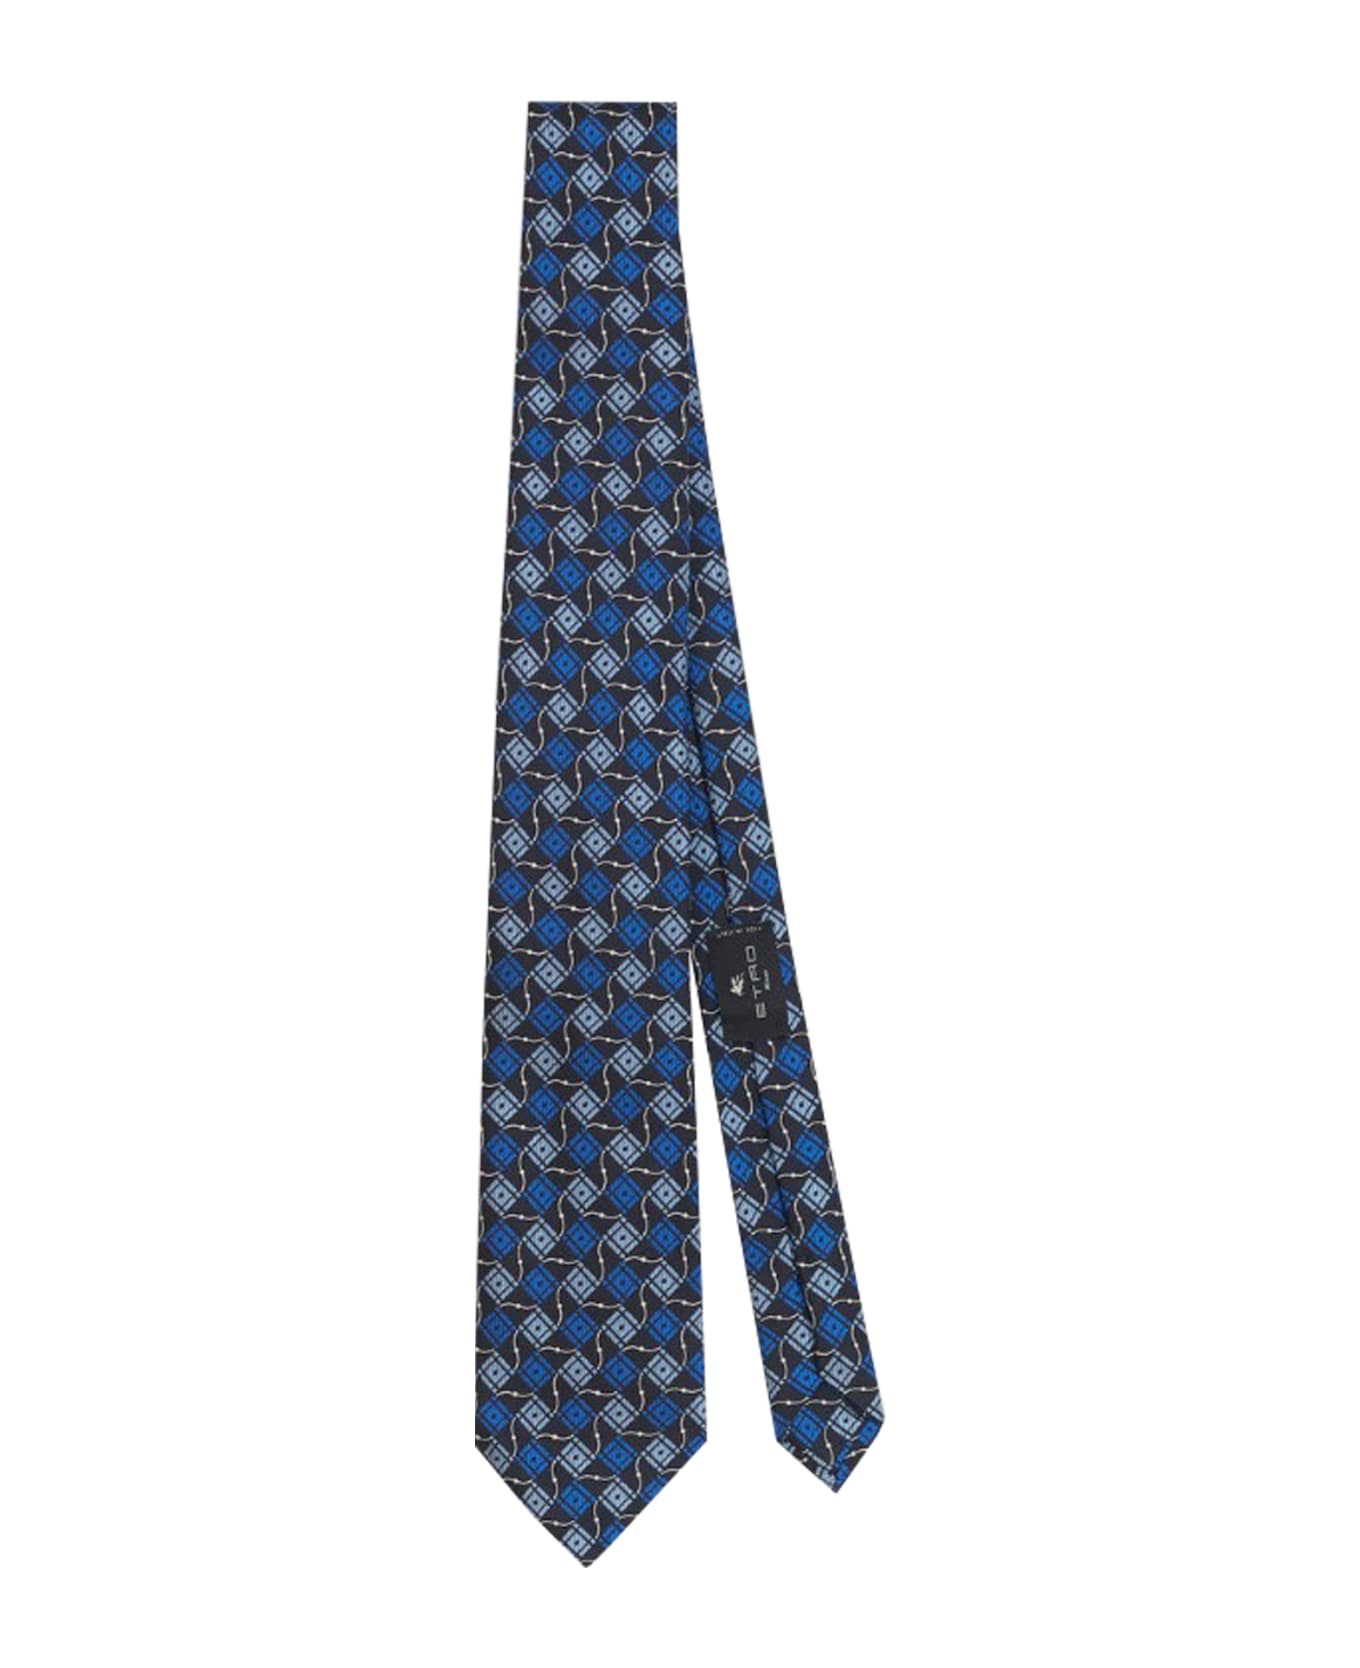 Etro 8 Cm Tie - Blue